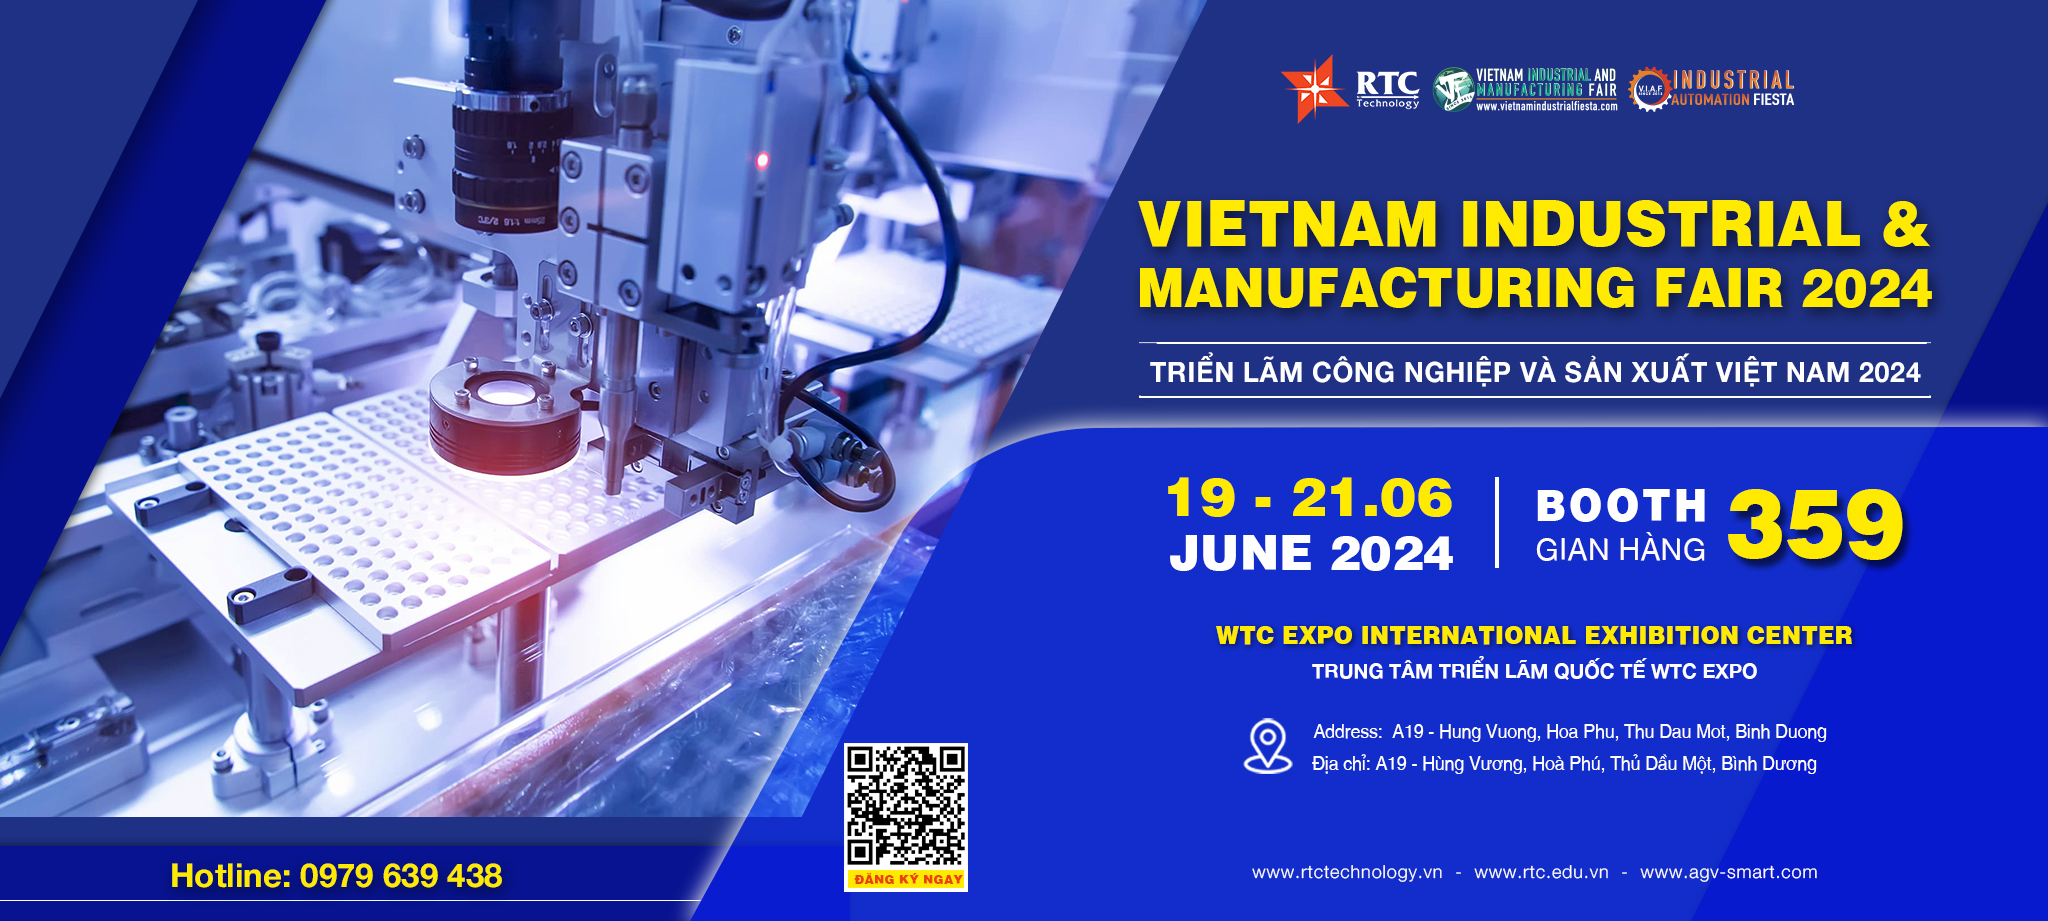 Thư mời tham dự triển lãm Vietnam Industrial & Manufacturing Fair (VIMF) Bình Dương 2024